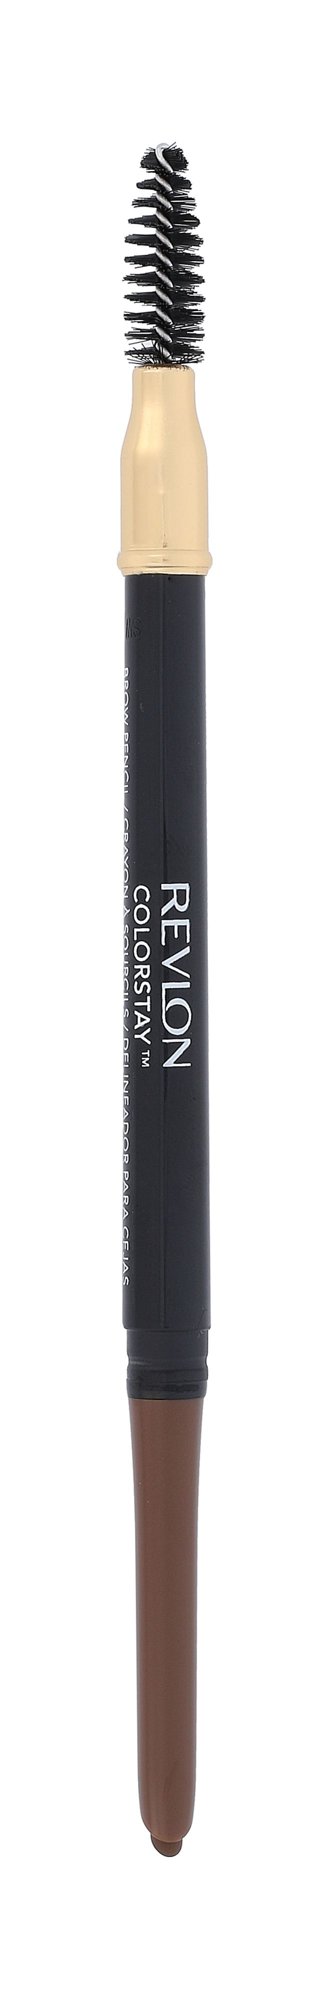 Revlon Colorstay Brow Pencil antakių pieštukas